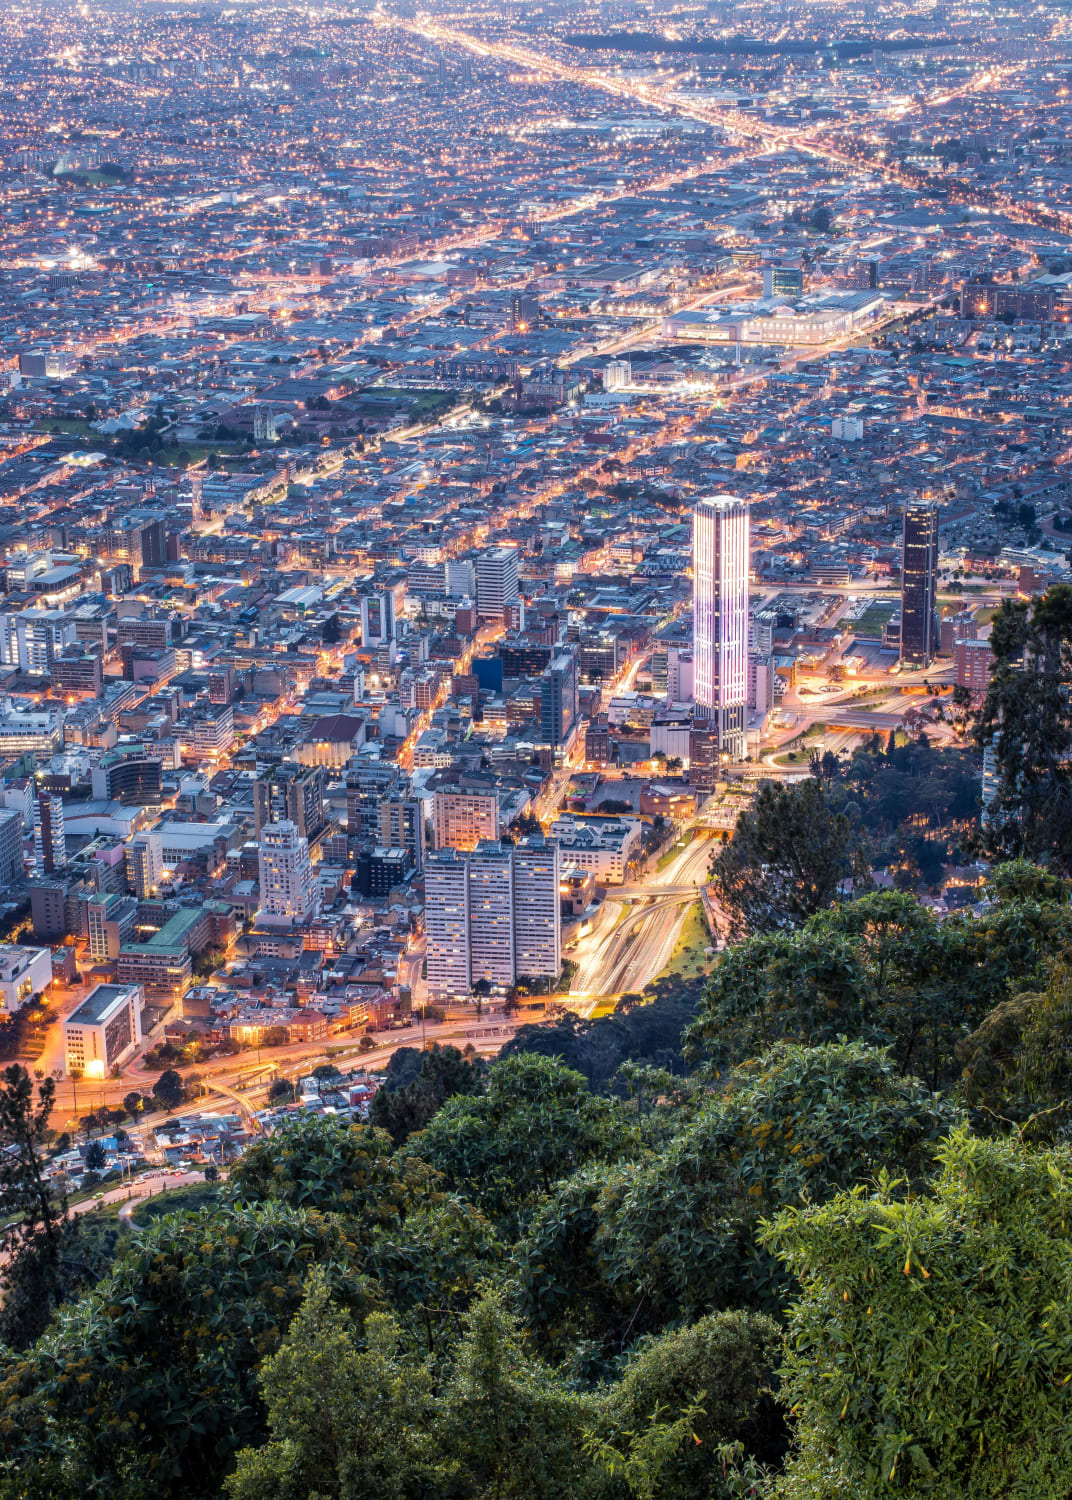 Cityscape of Bogota, Colombia